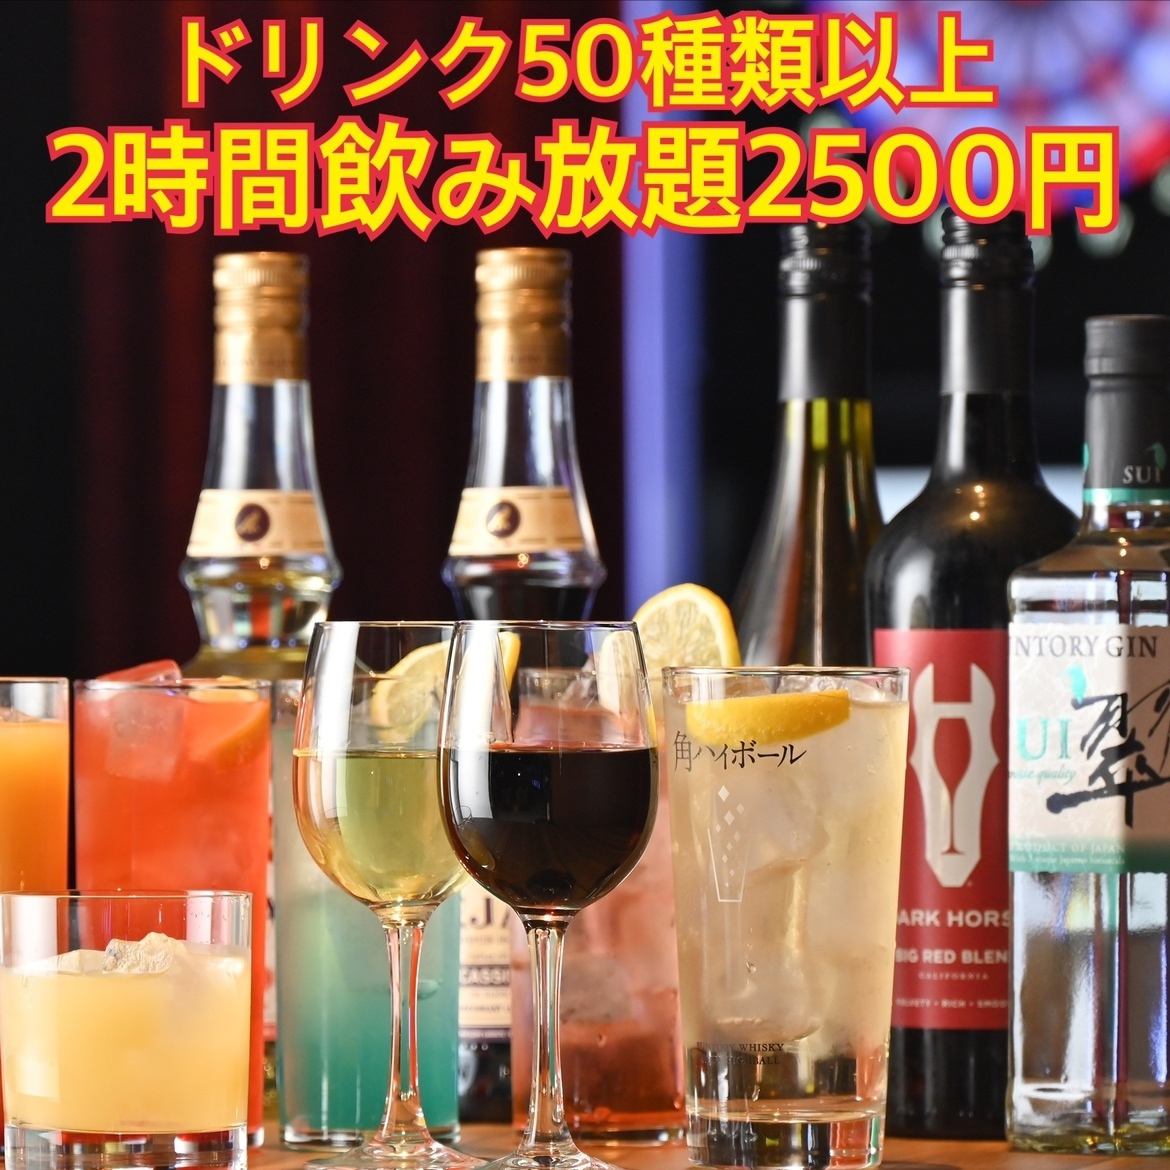 2小时无限畅饮2,500日元～★请为第二人或第三人使用！